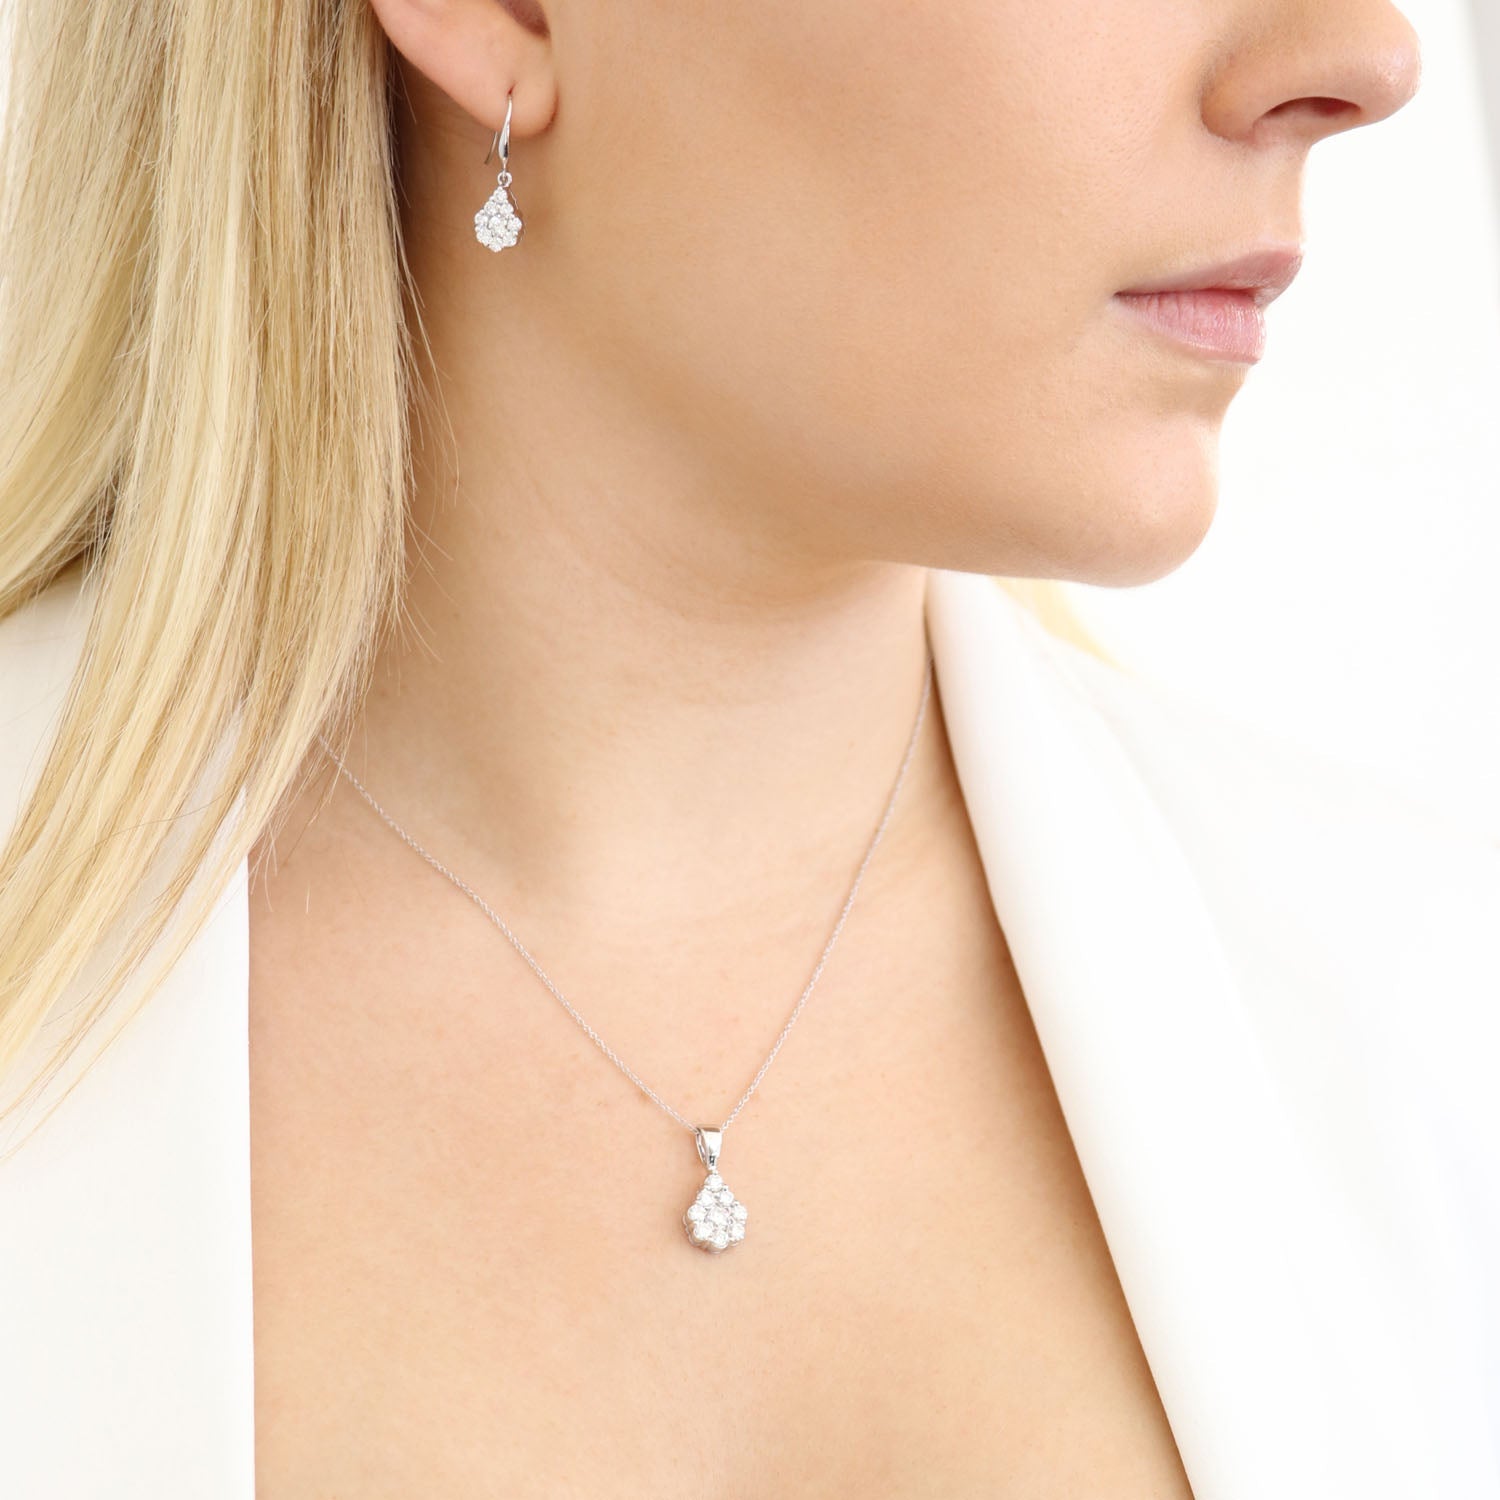 Tear Drop Hook Diamond Earrings with 1.00ct Diamonds in 9K White Gold - 9WTDSH100GH